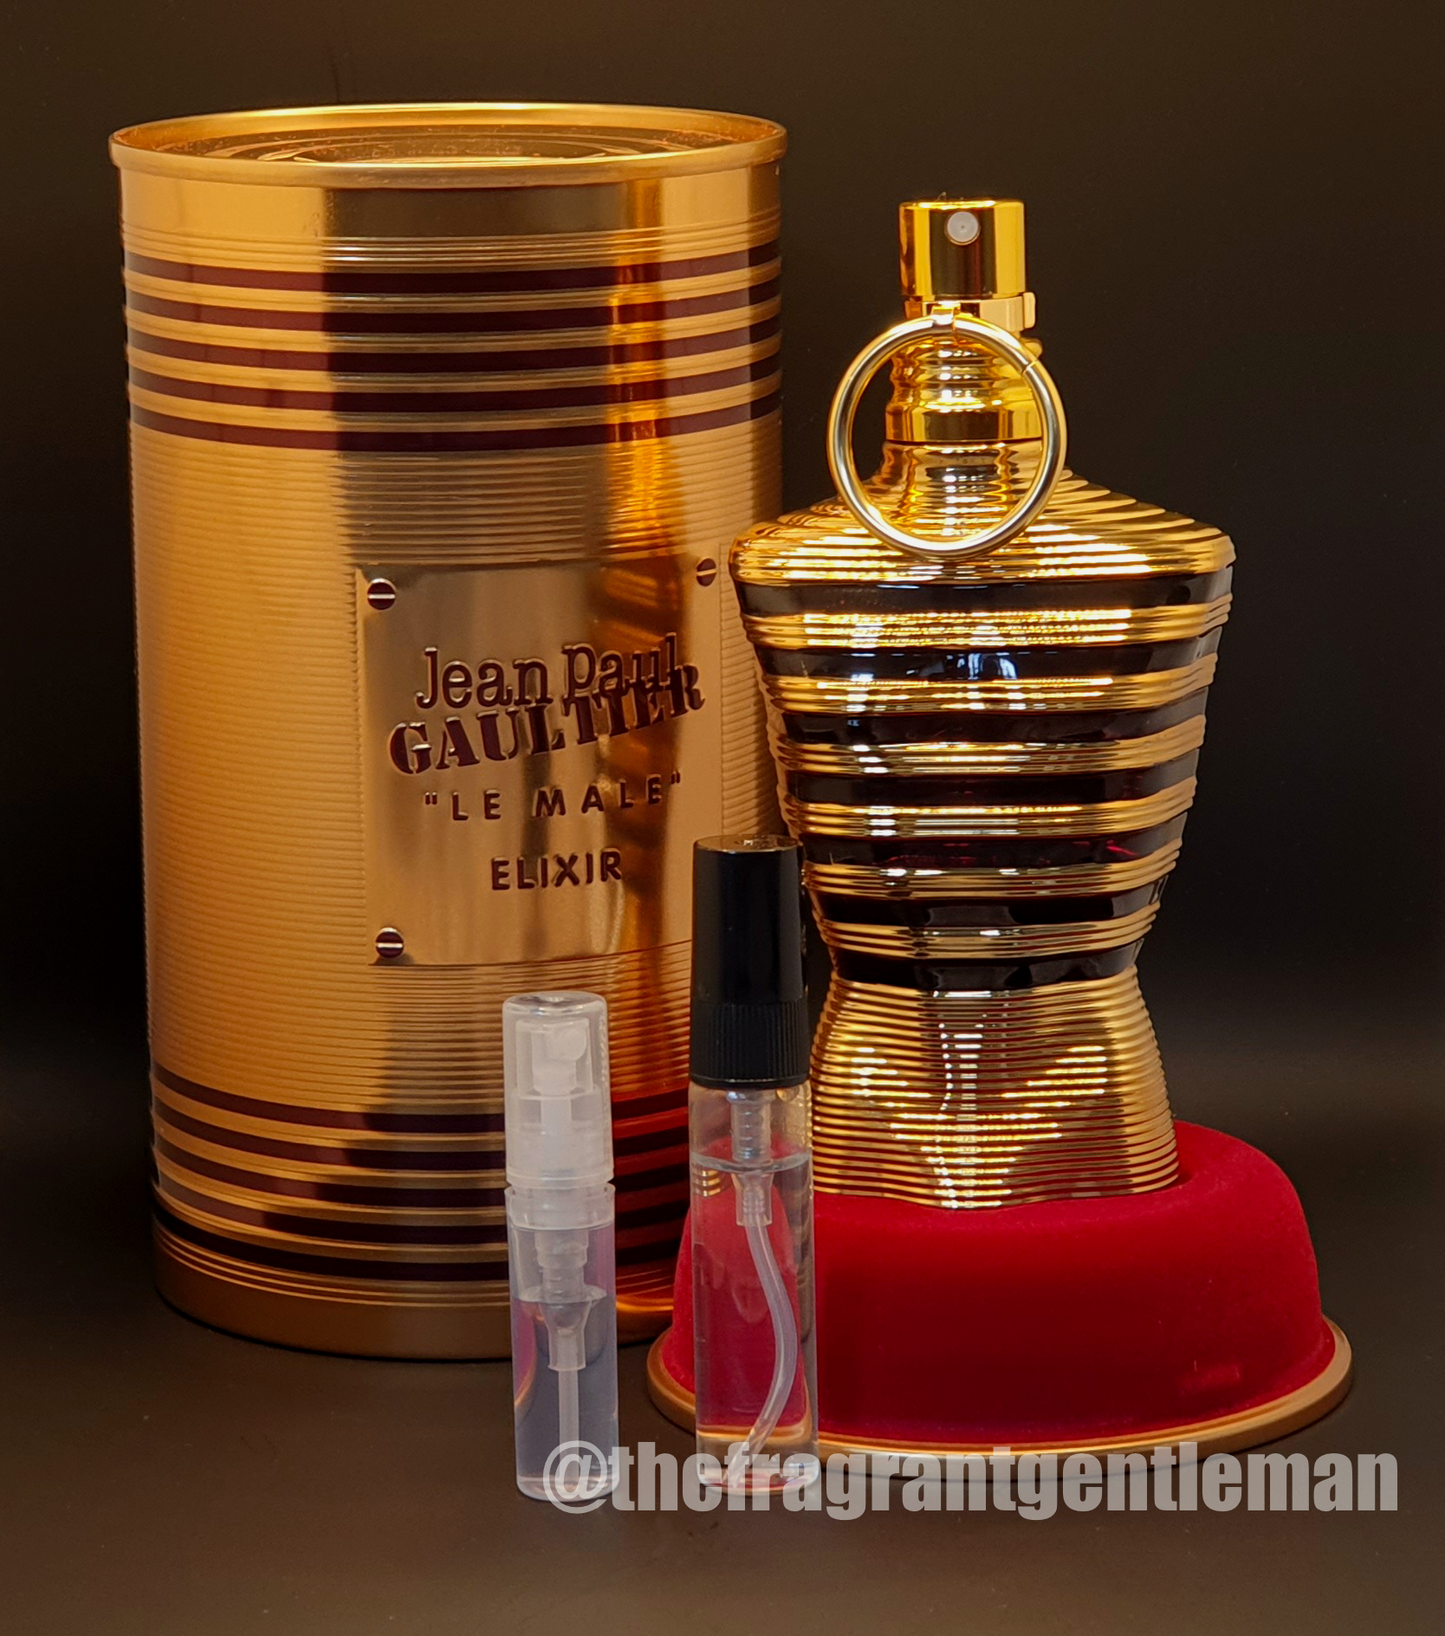 Shop for samples of Le Male Le Parfum (Eau de Parfum) by Jean Paul